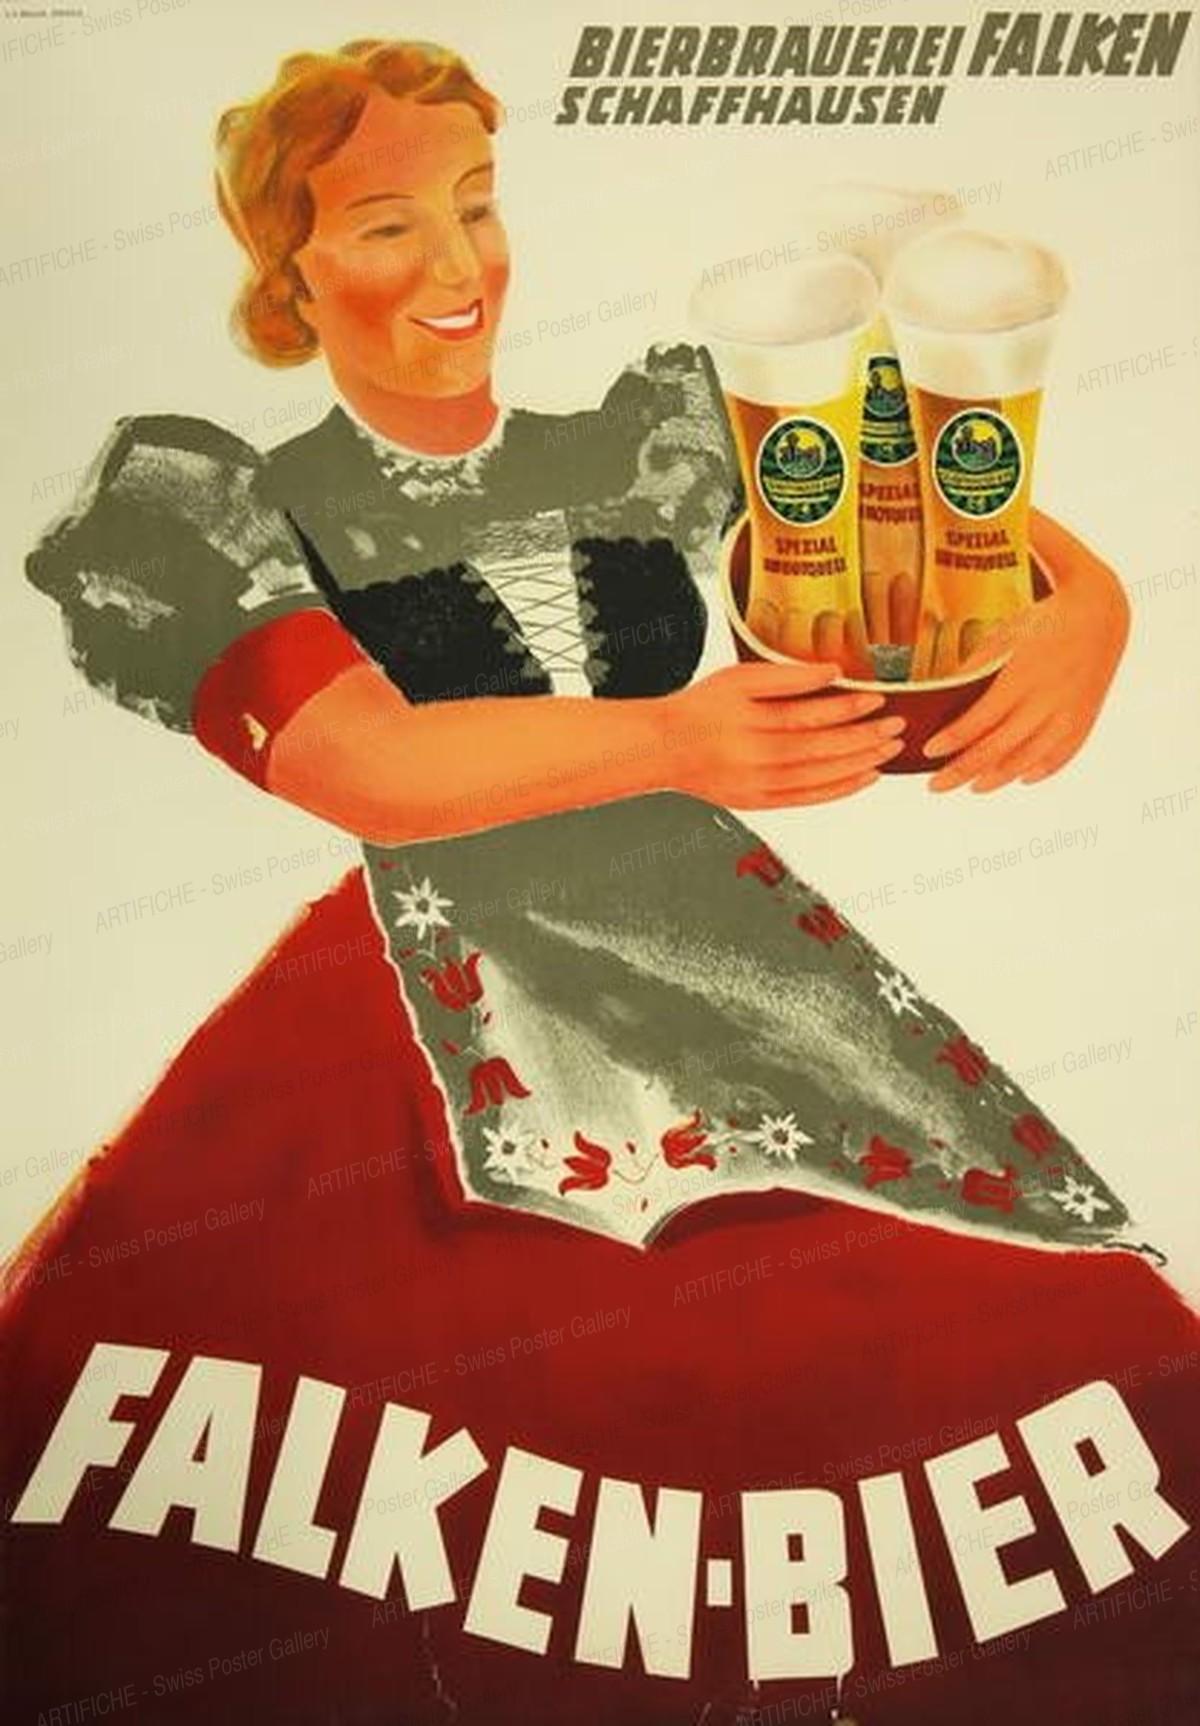 Brewery Falken Schaffhausen, Sandoz